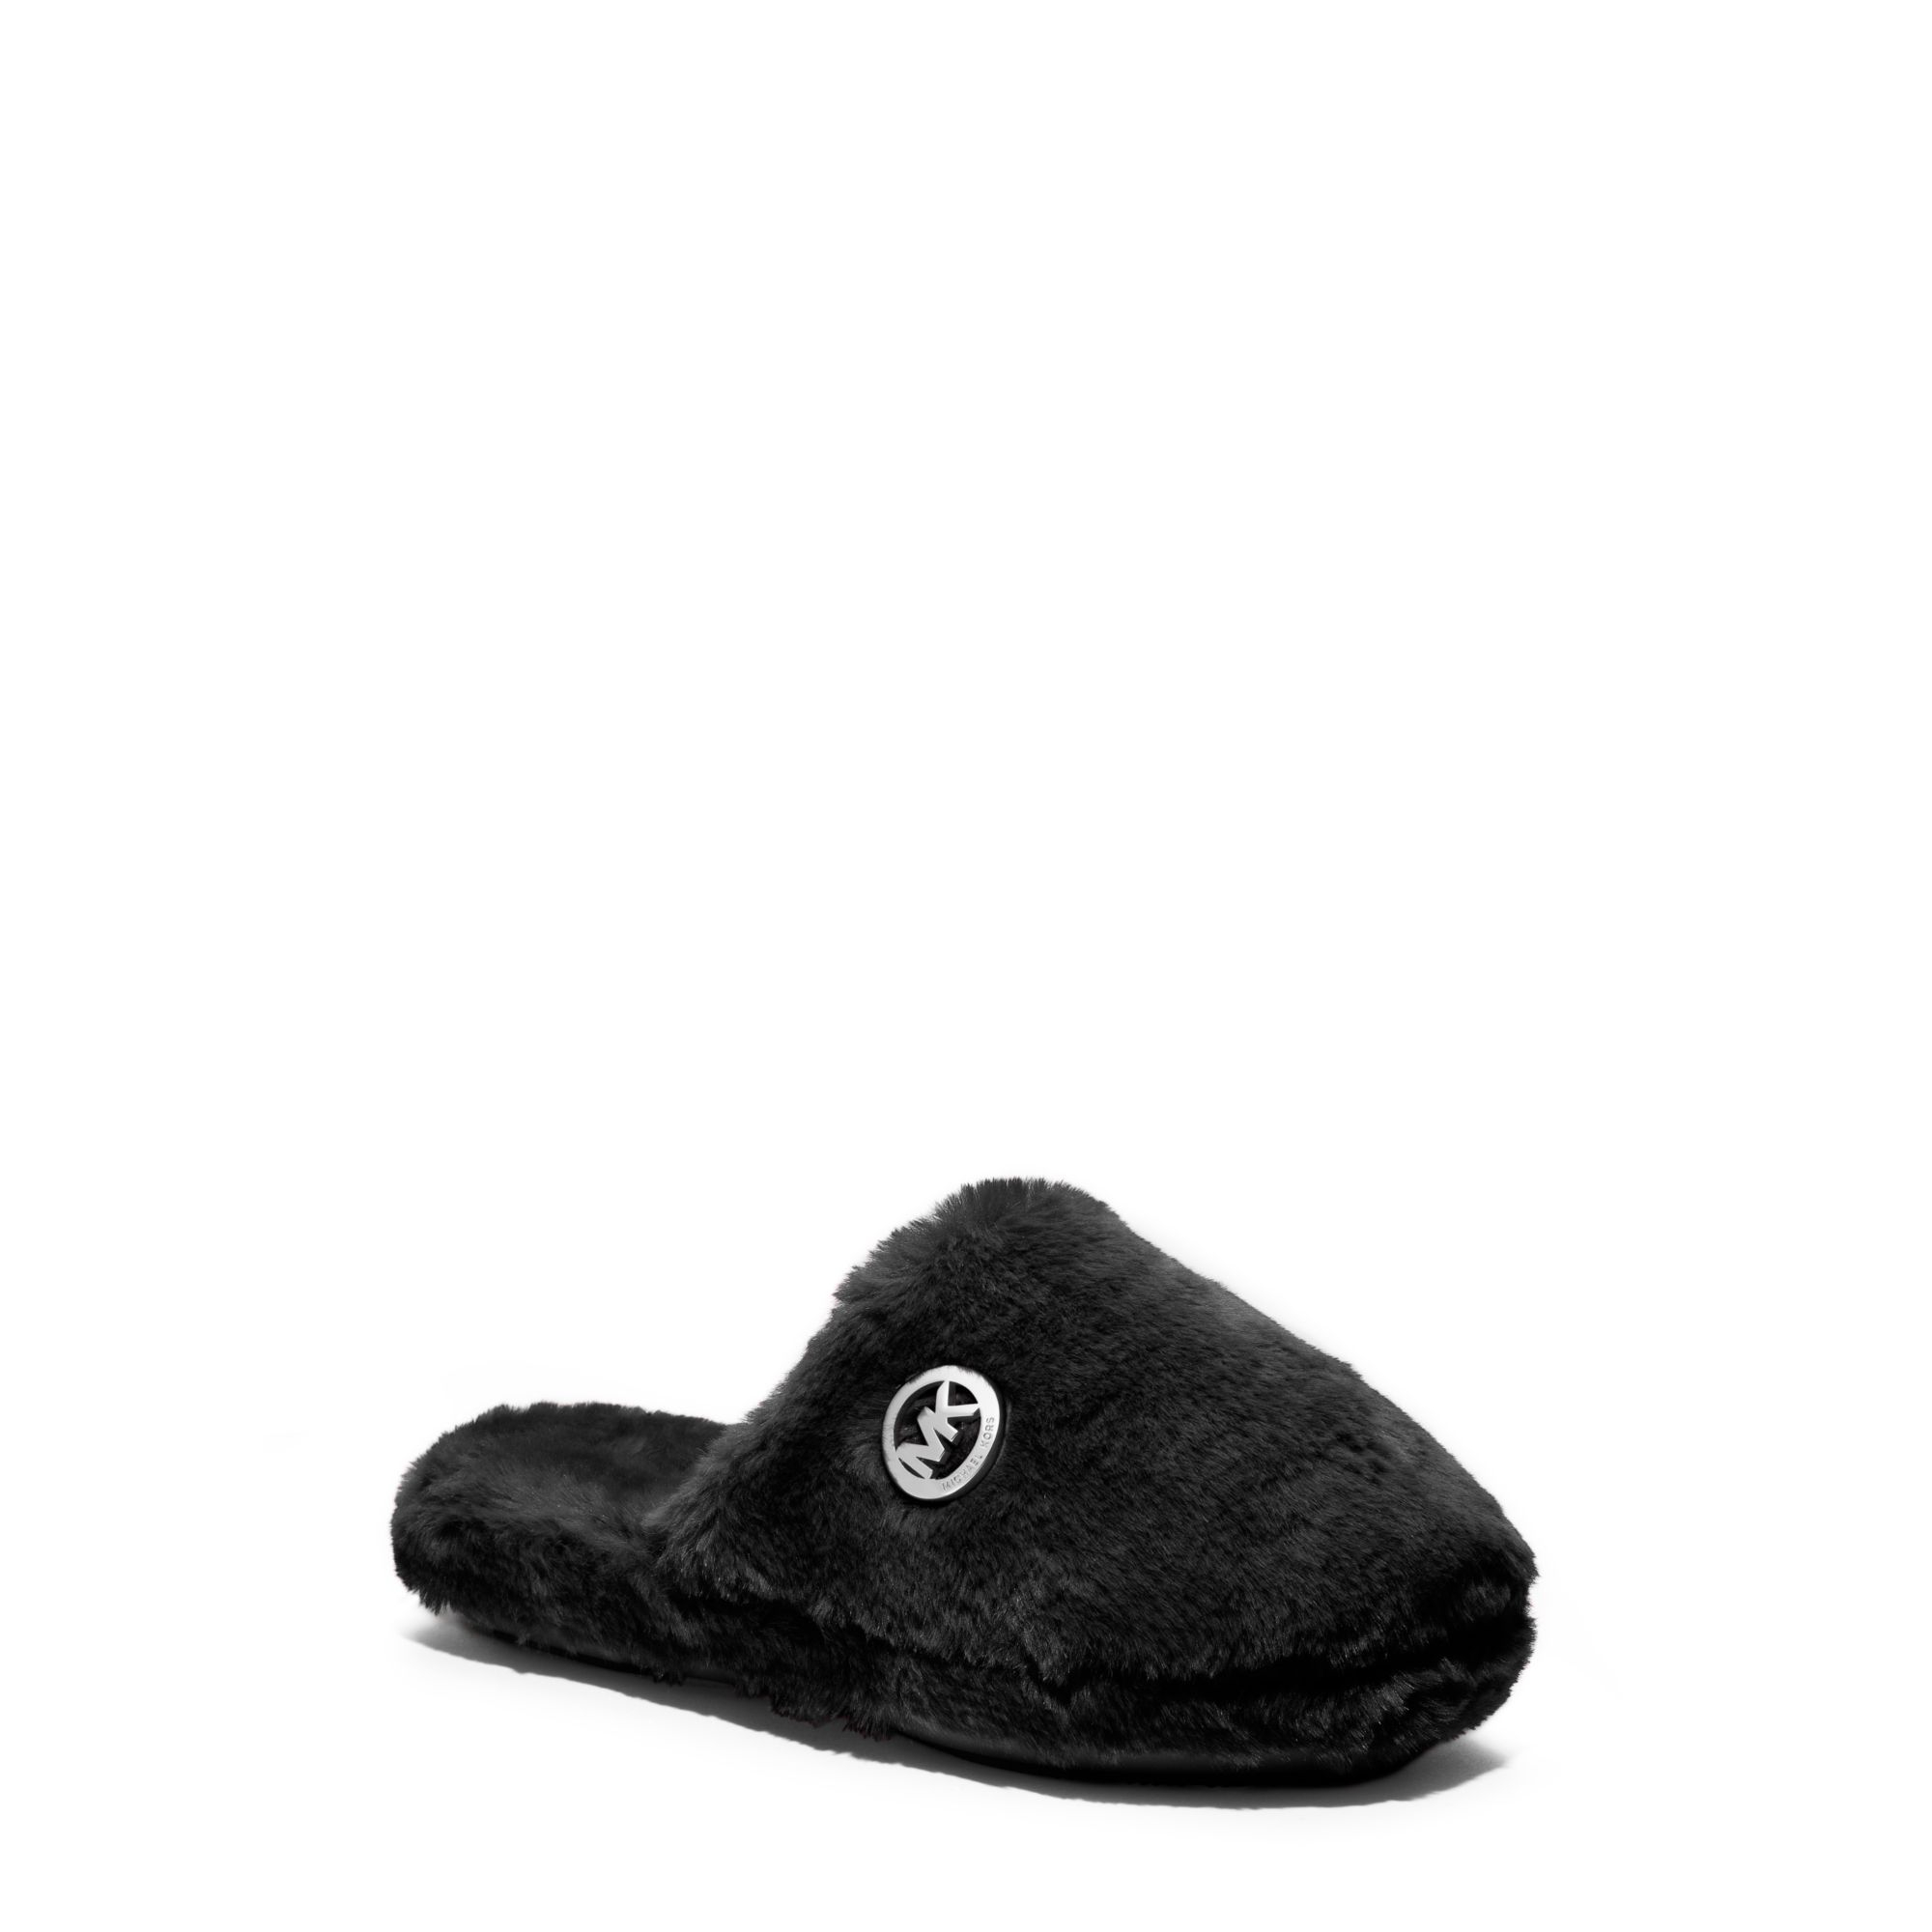 michael kors black slippers